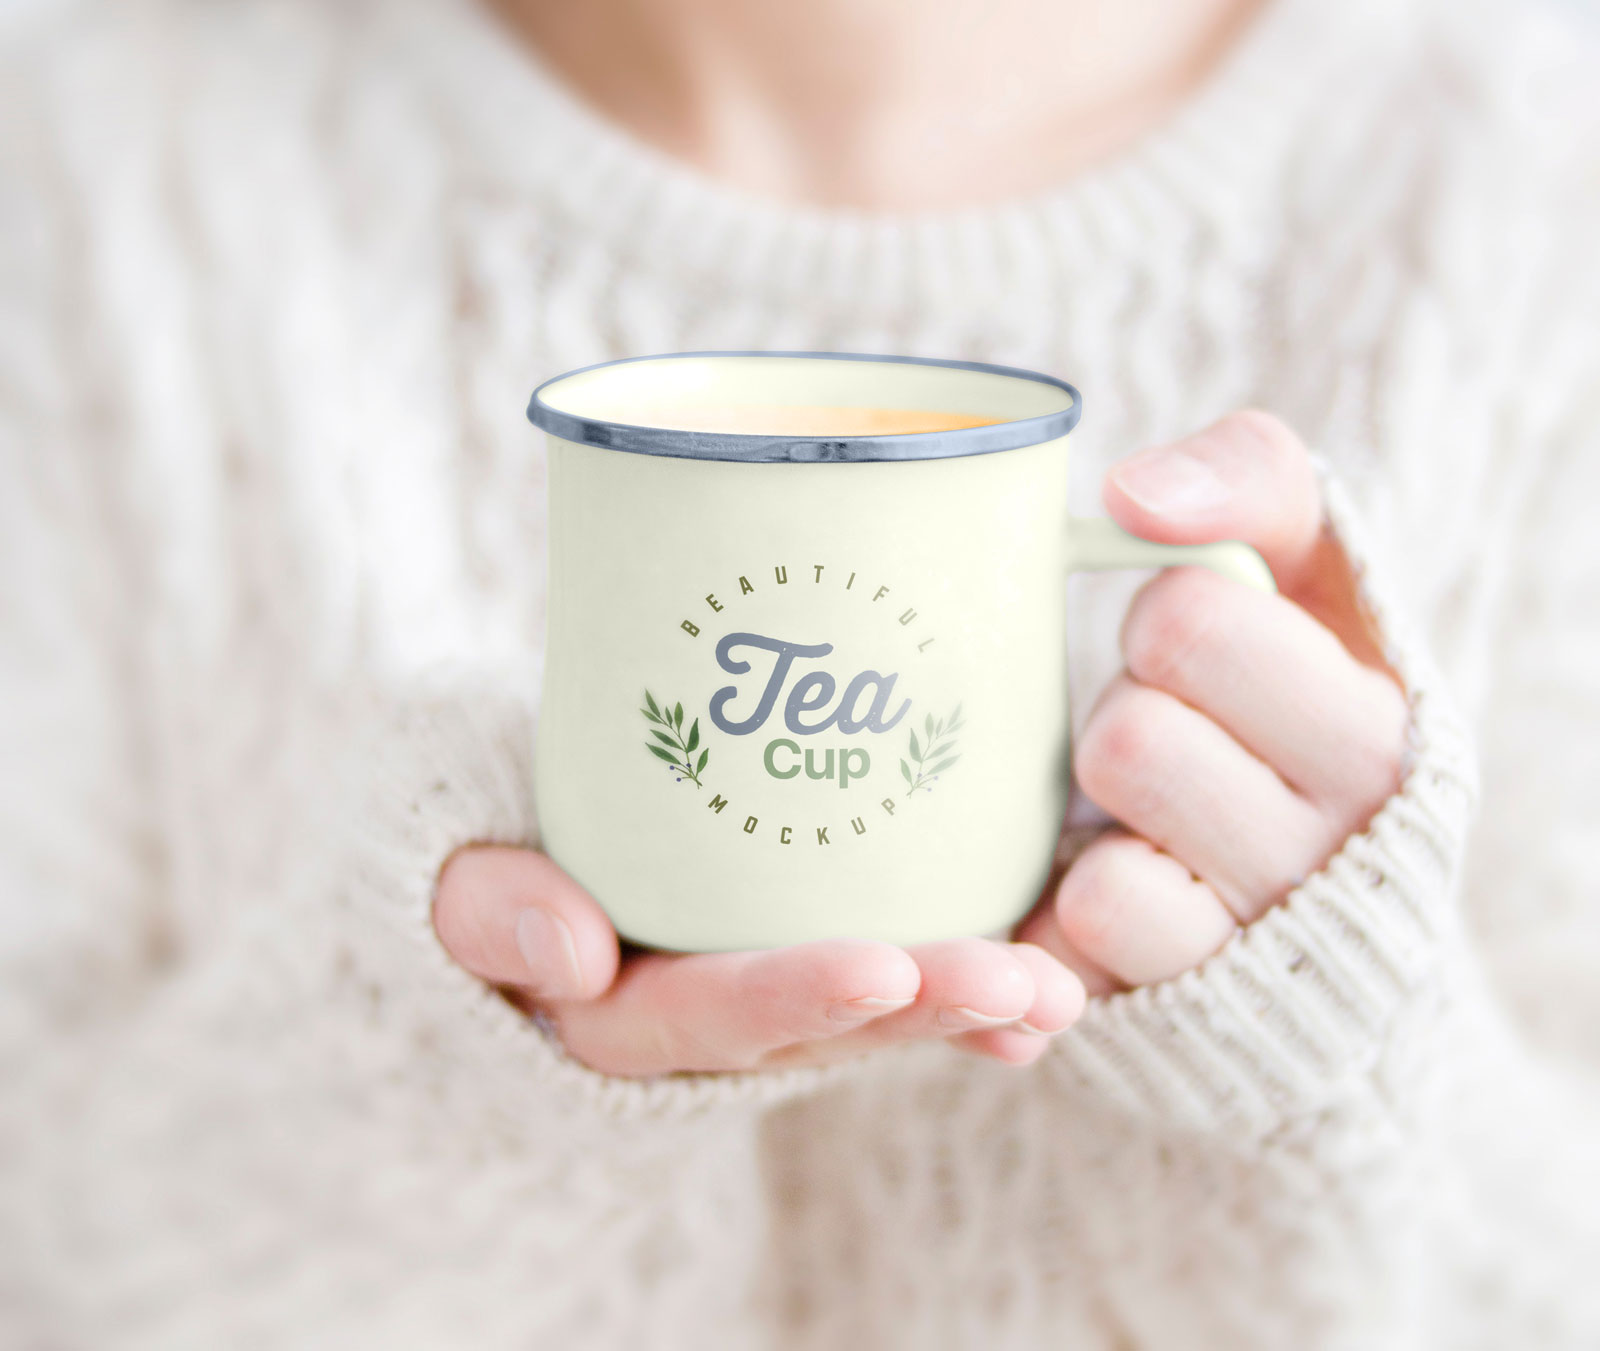 Weiblich hält Tee Tasse kostenloses Modell